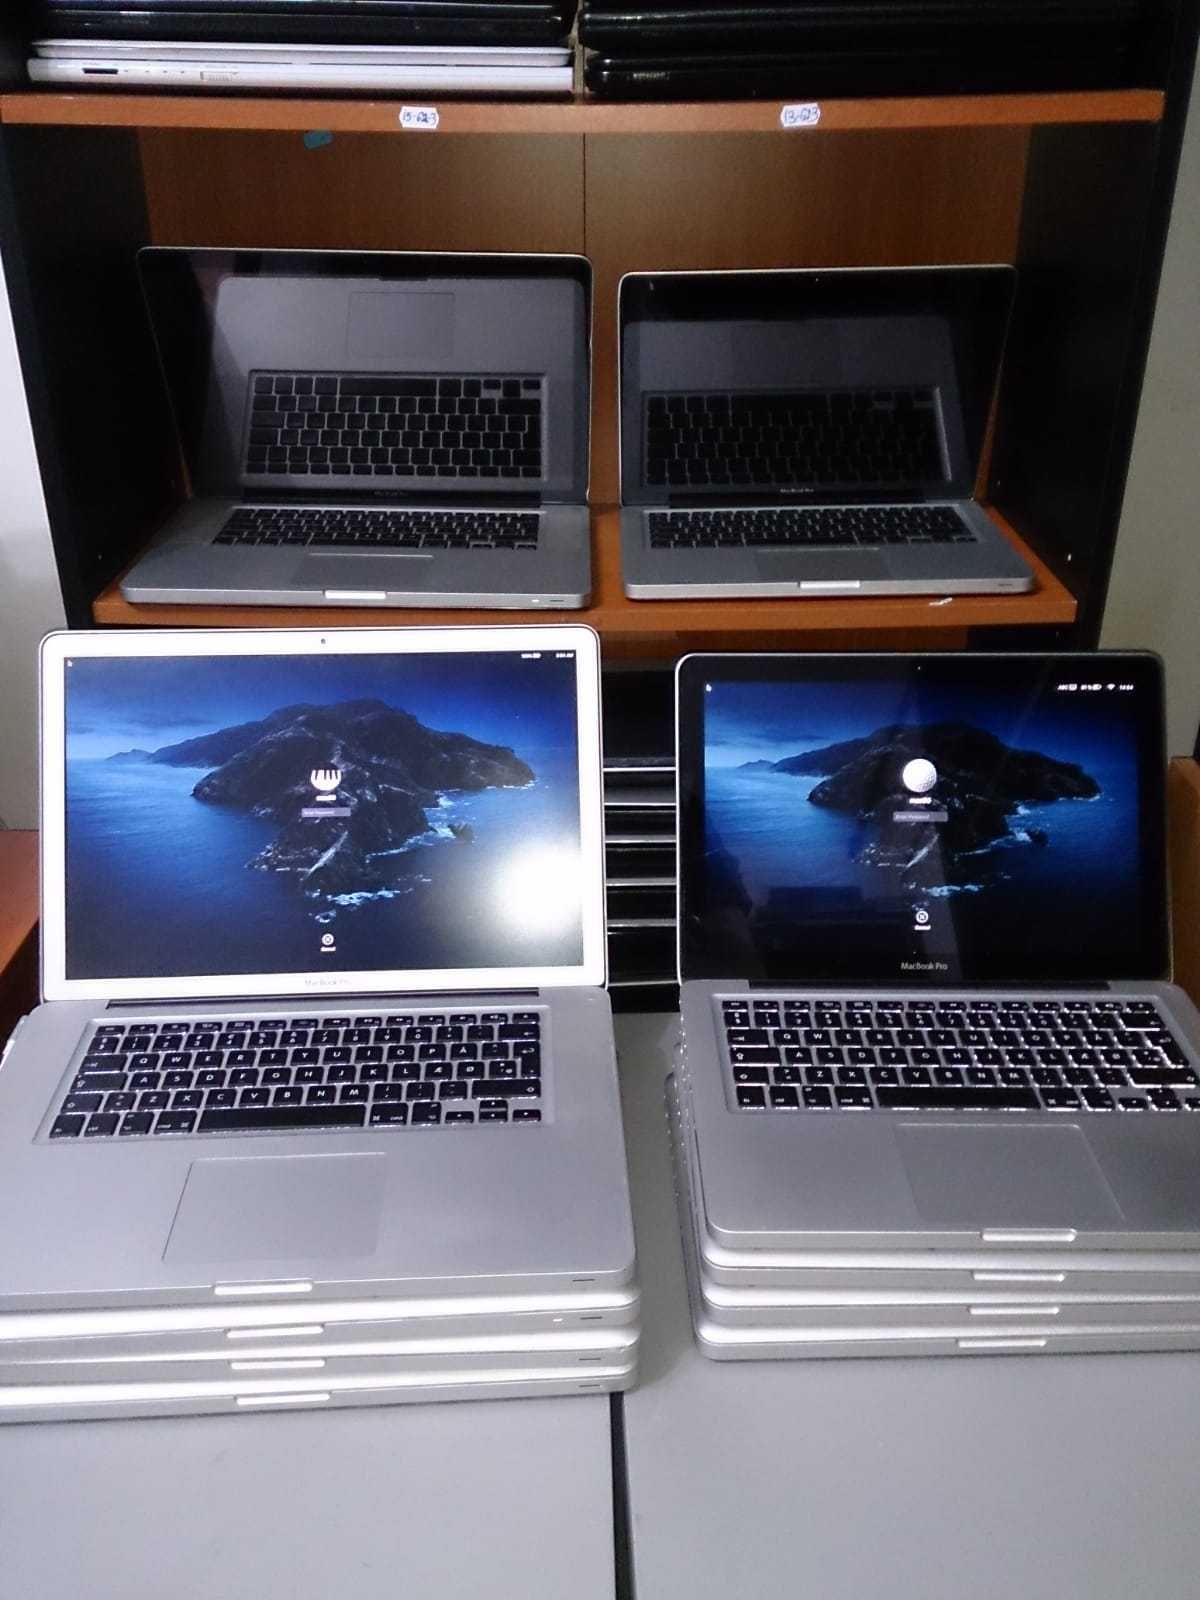 Laptop SH - MacBook Pro 2012  i5-3210M 8gb ssd 480gb  13"